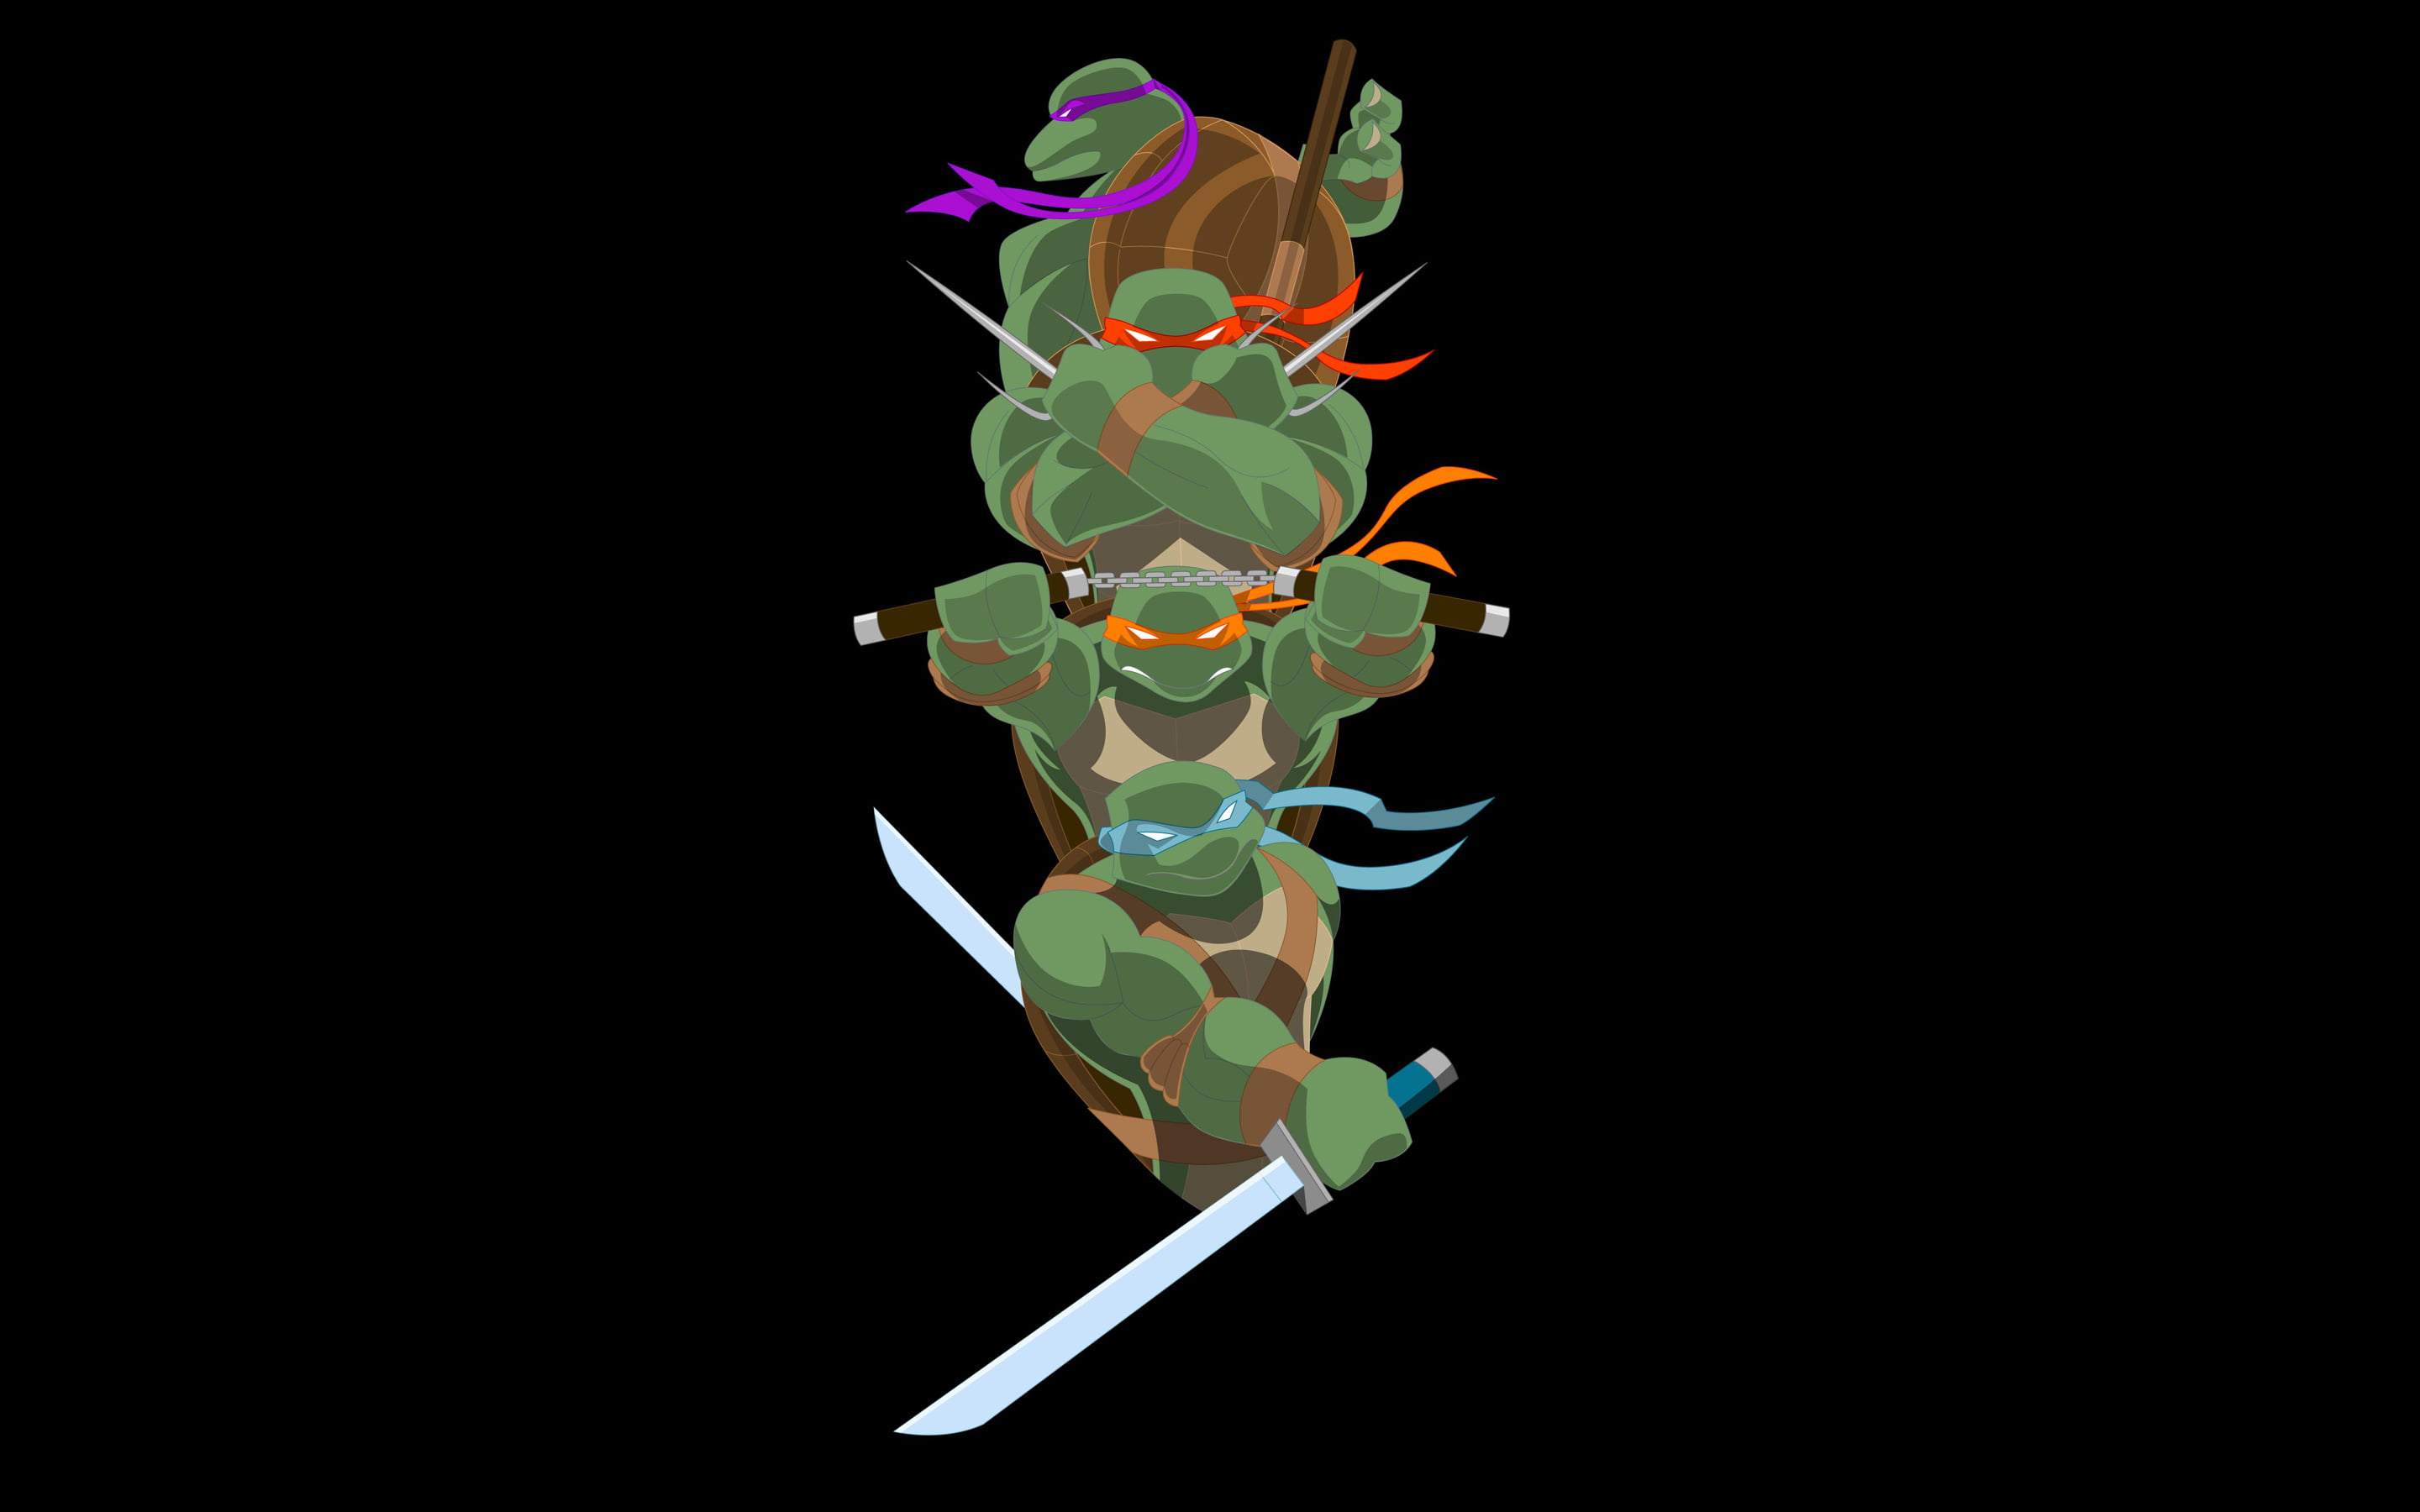 TMNT vector art, teenage mutant ninja turtles, minimalism, flower